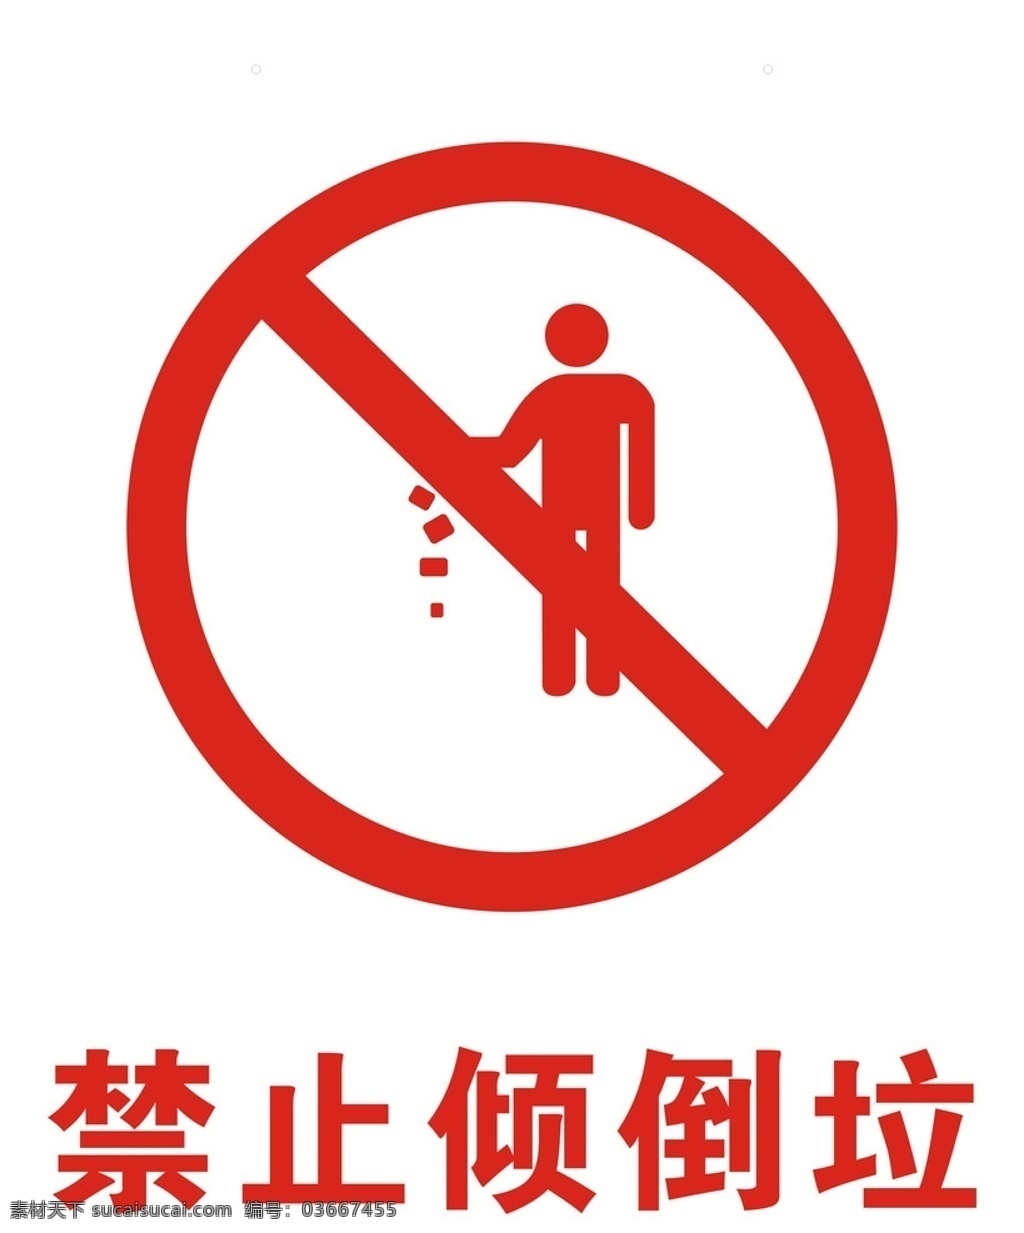 禁止倾倒垃圾 禁止标牌 公共标识标志 标识标志图标 矢量